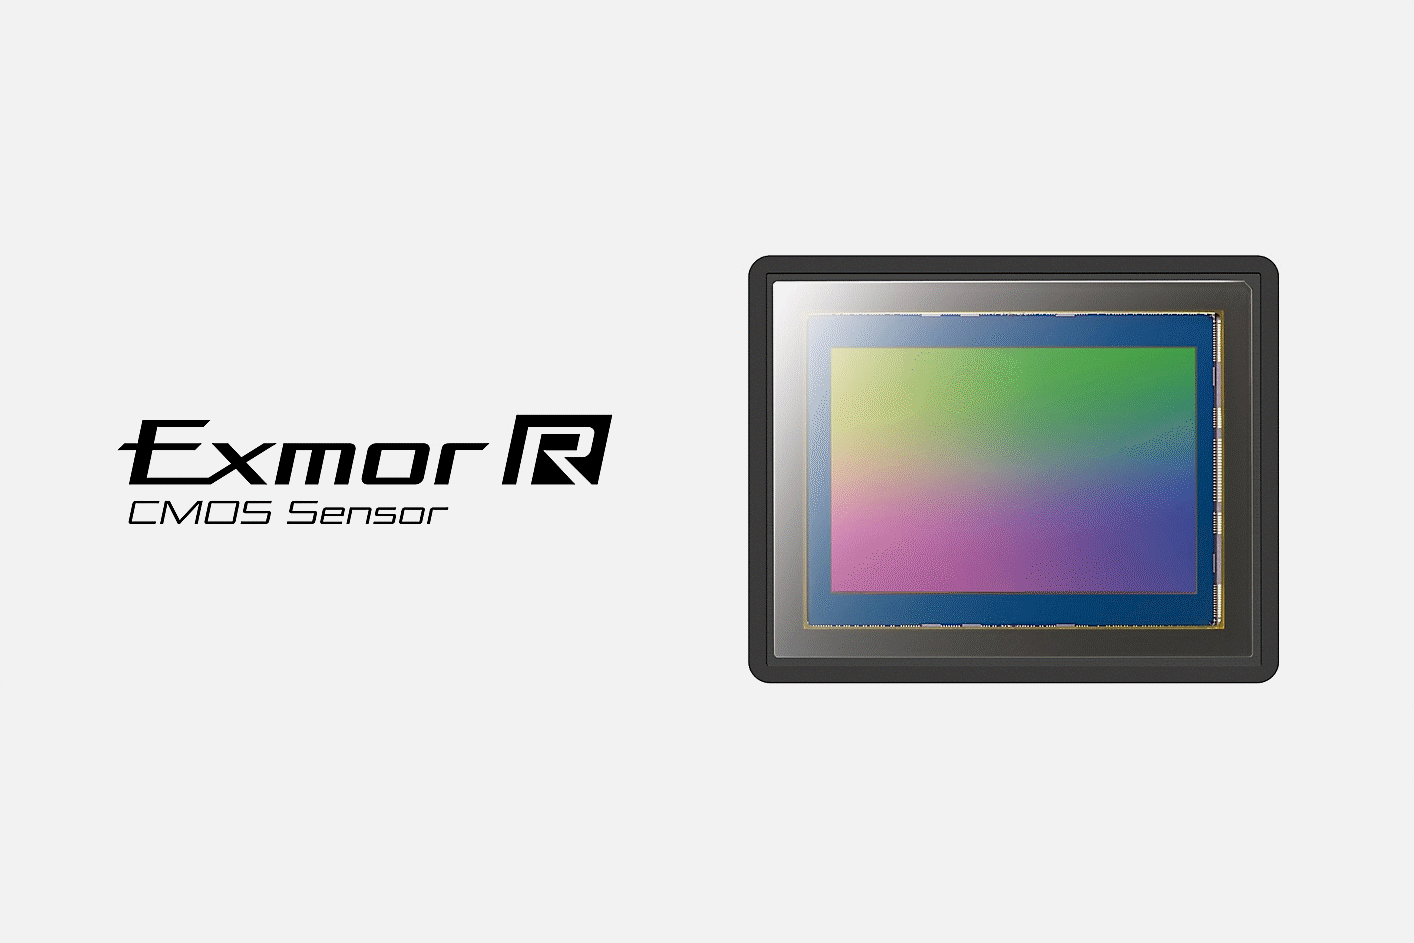 Image of the Exmor R CMOS image sensor